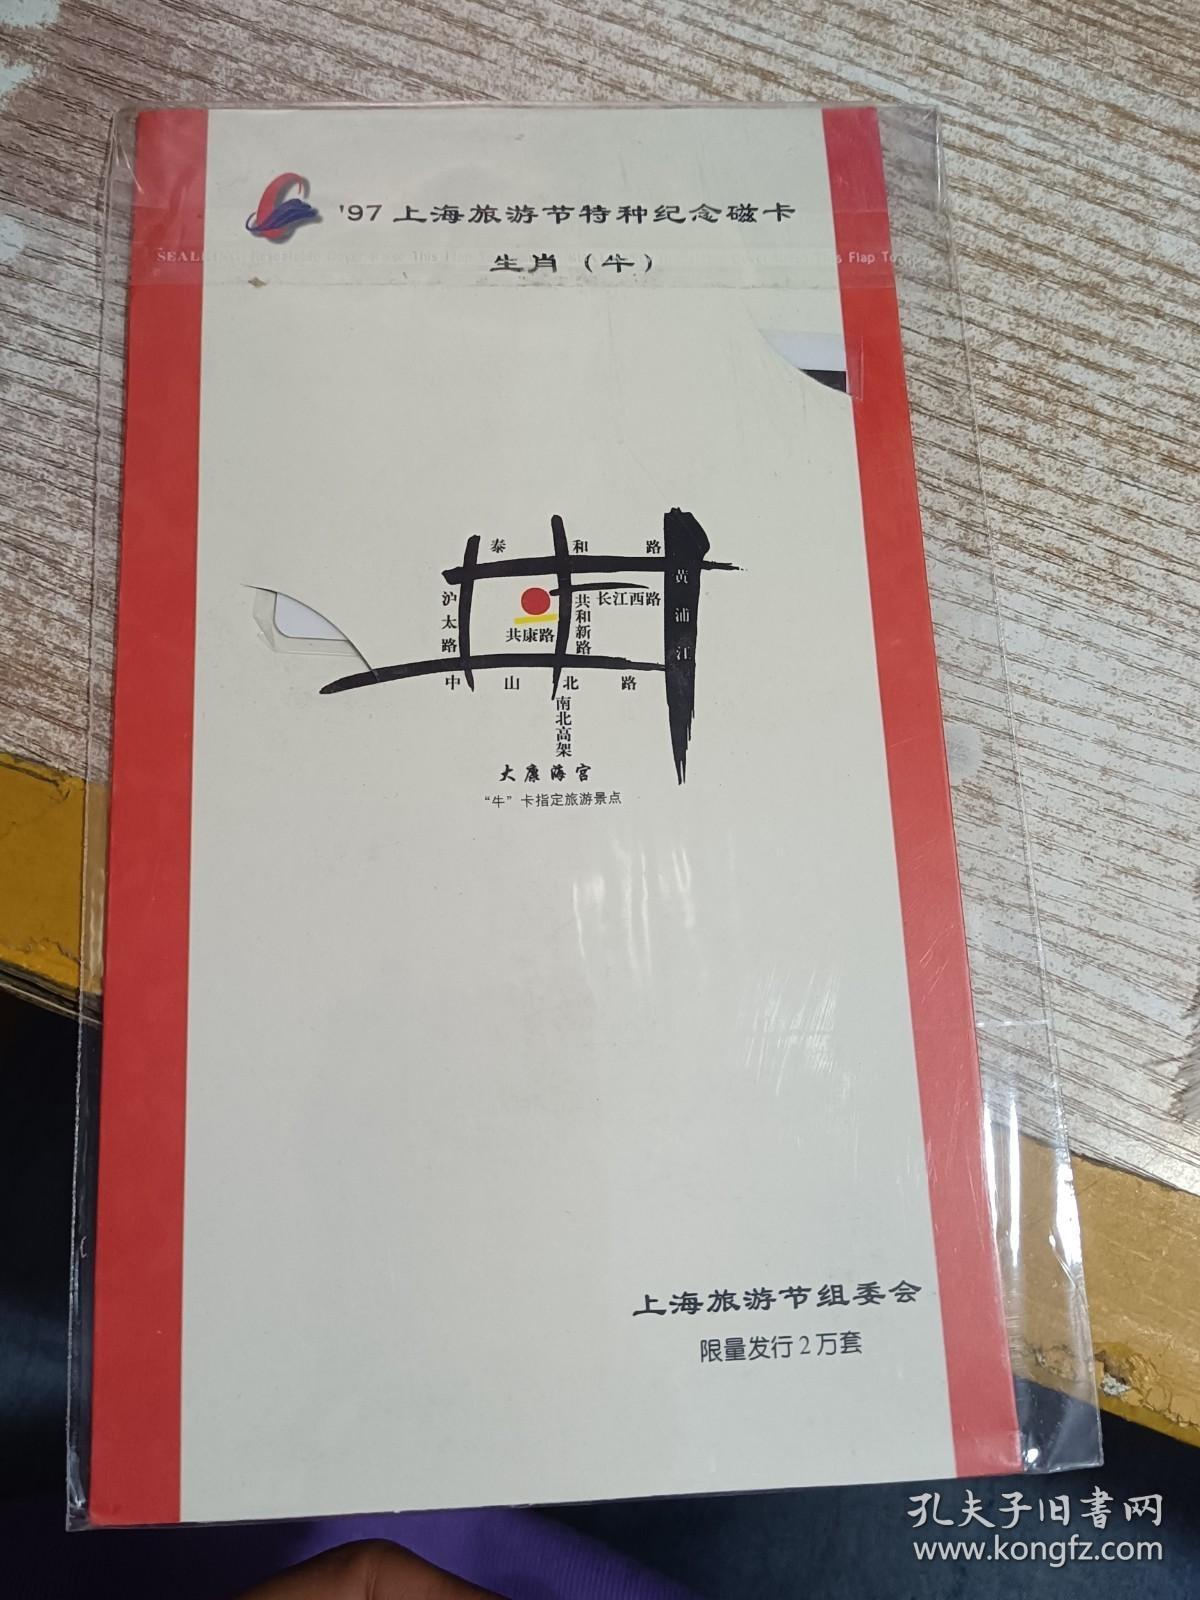 97上海旅游节特种纪念磁卡 生肖（牛）